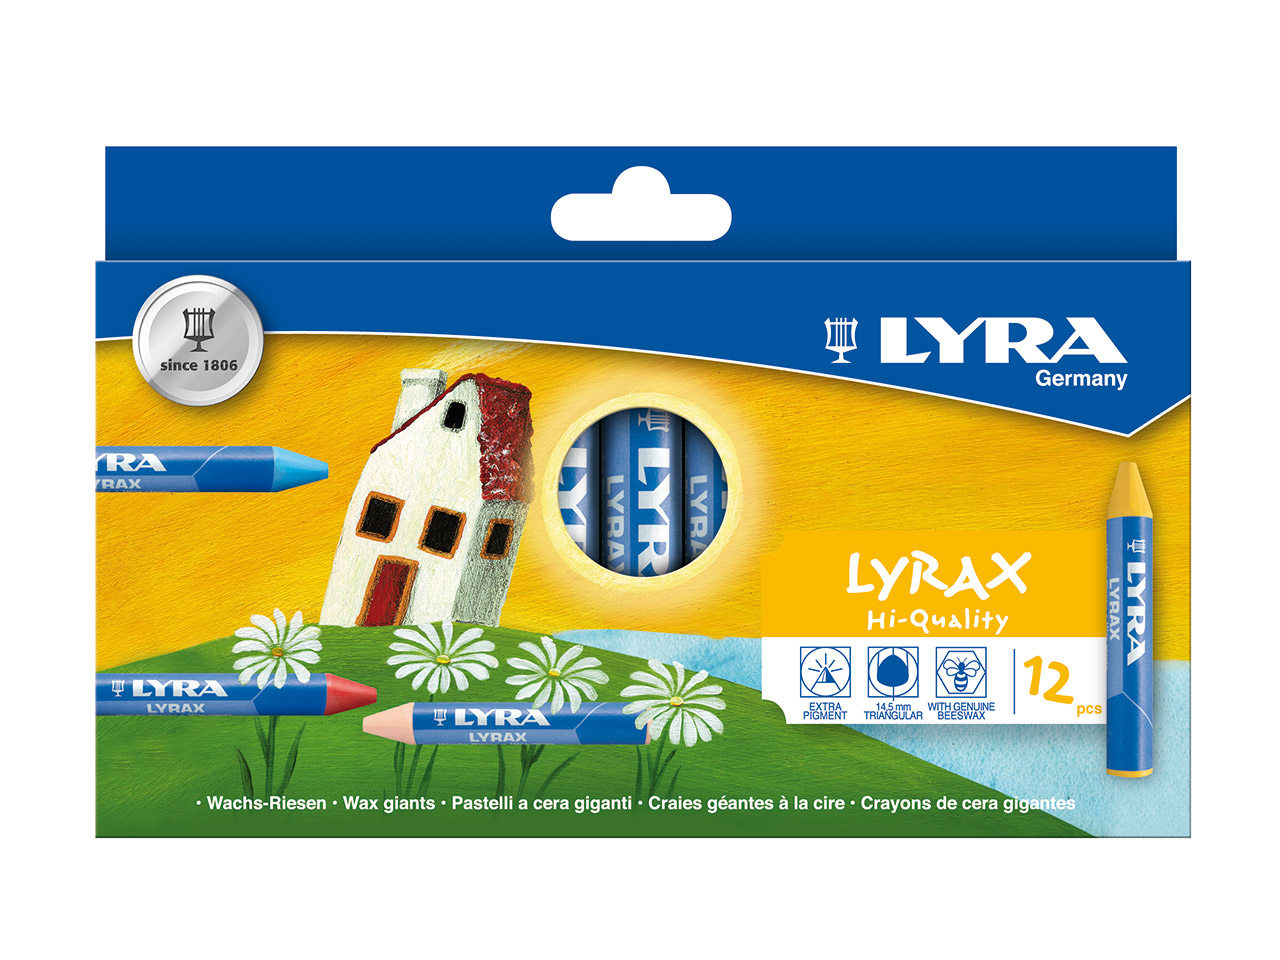 Lyra Lyrax Wachs-Riesen - Fila Deutschland